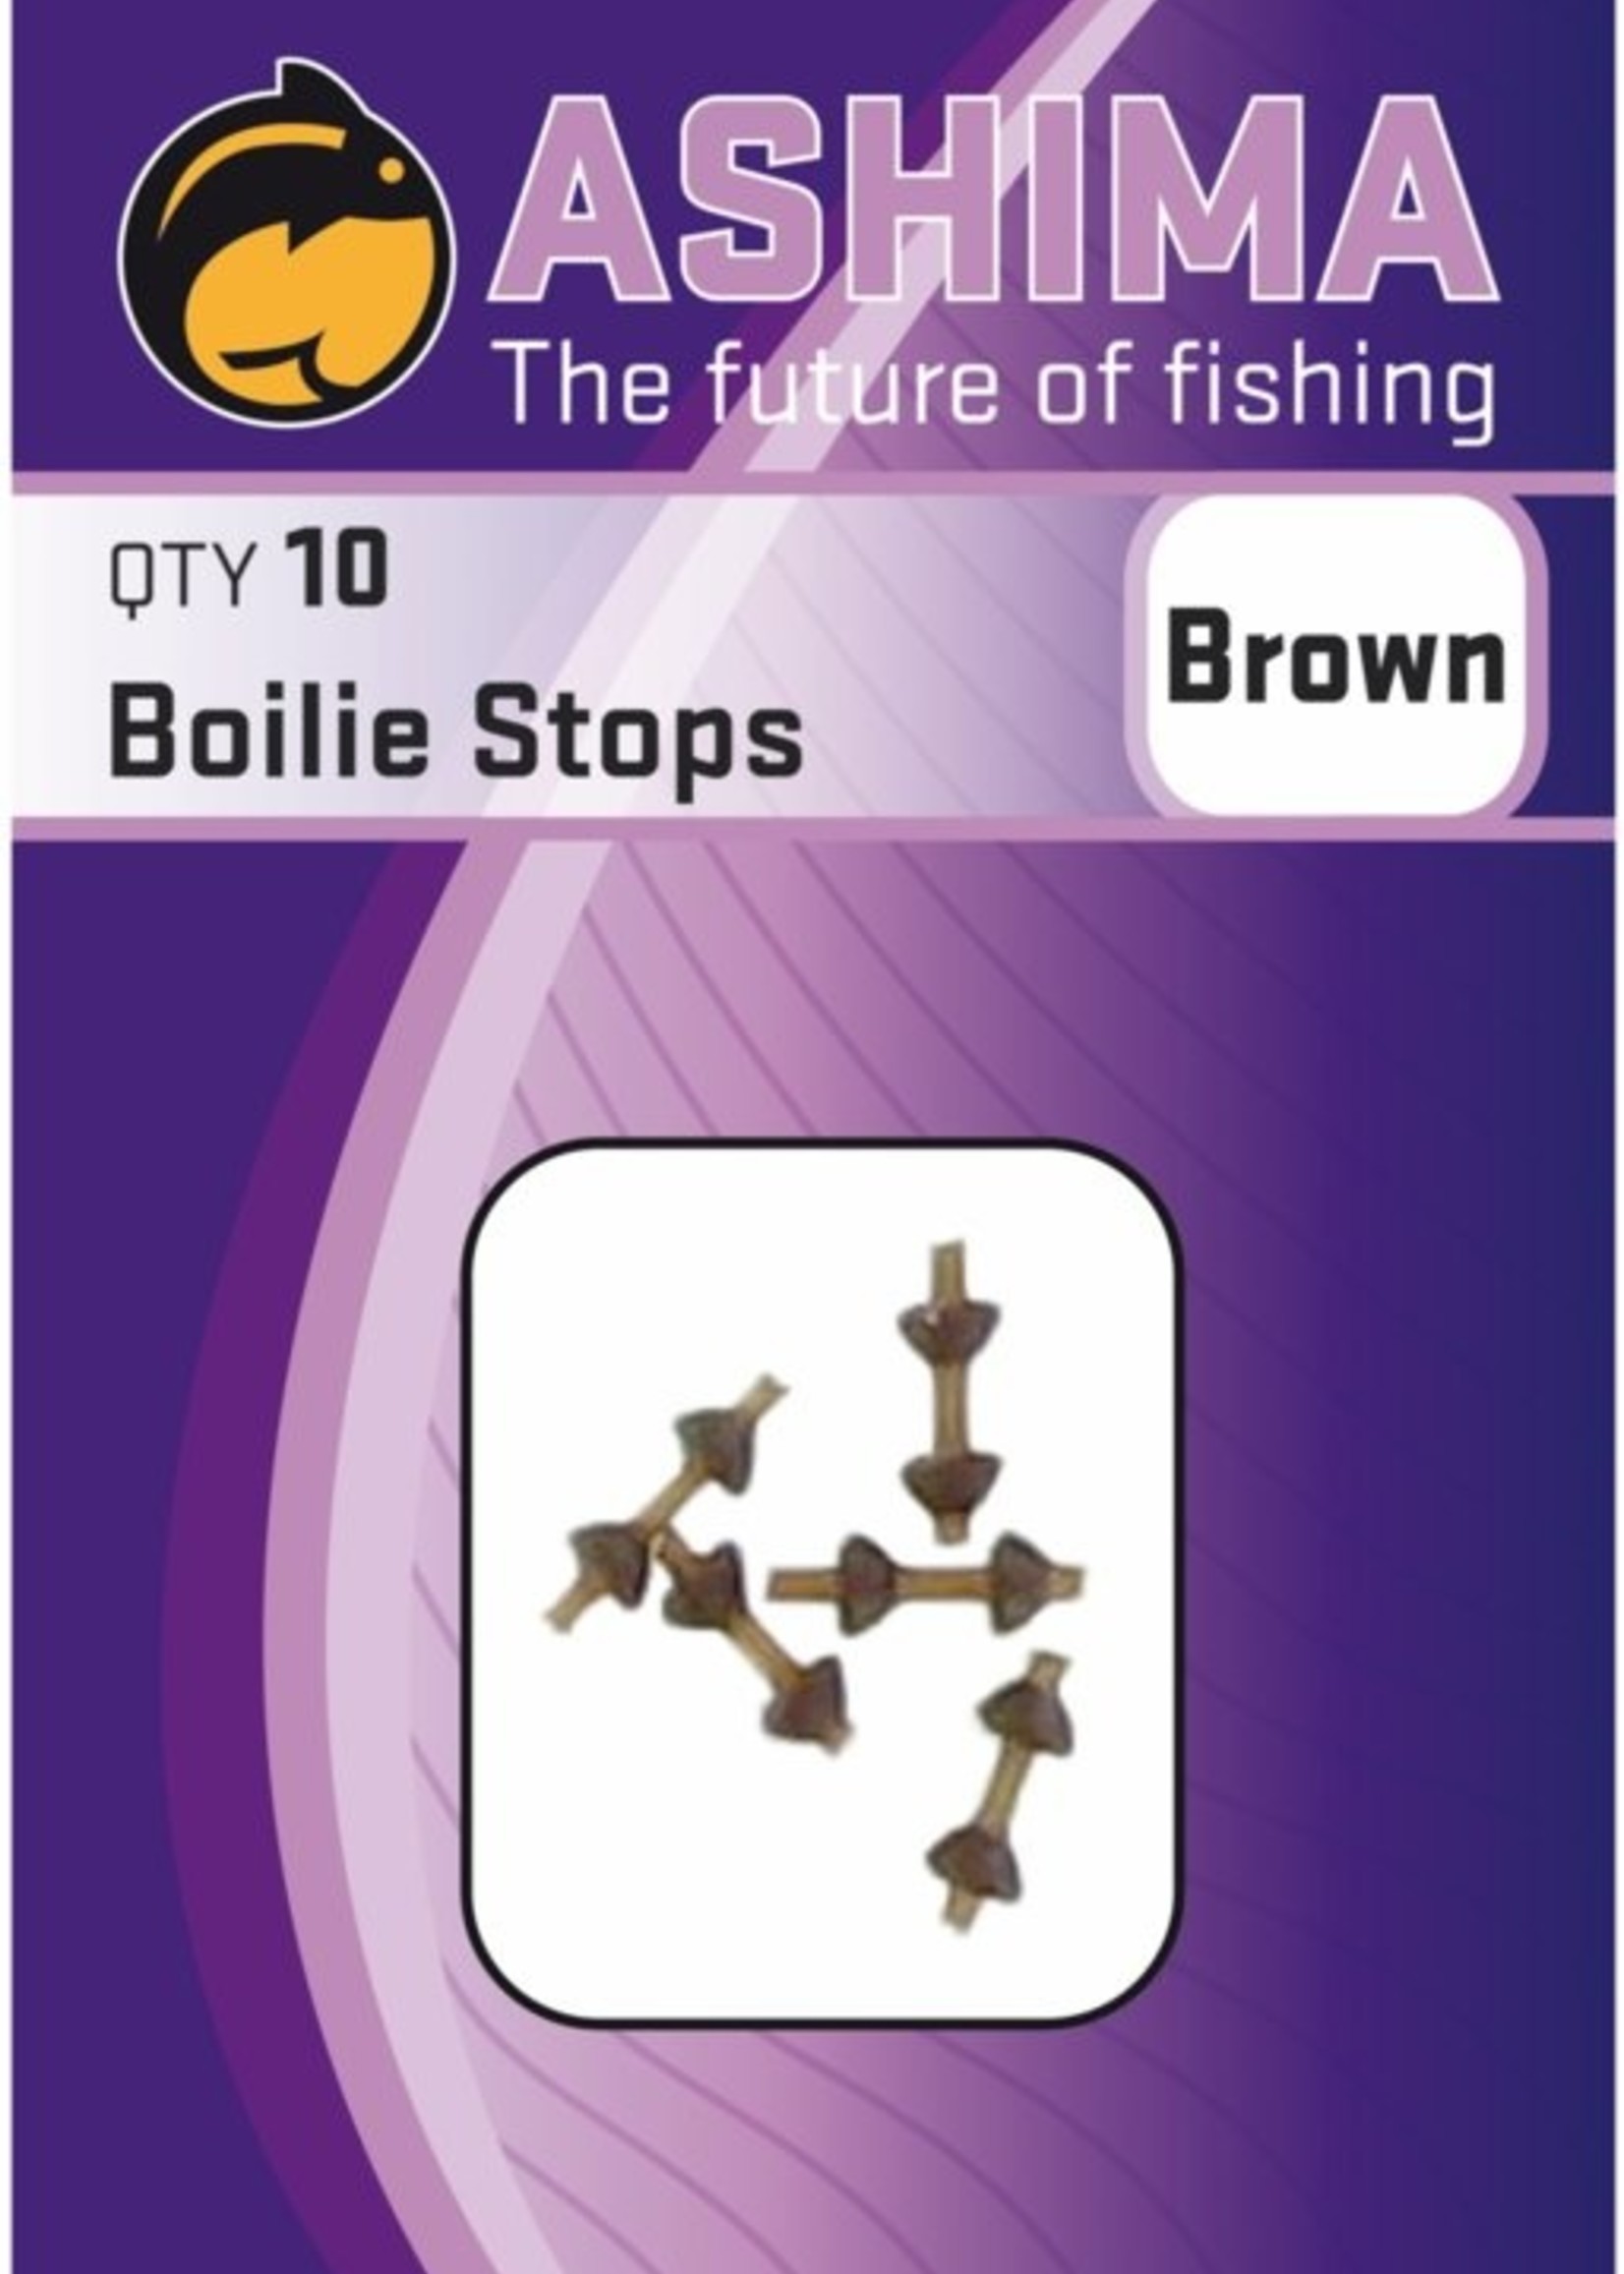 Ashima Ashima “Boilie Stops” Brown